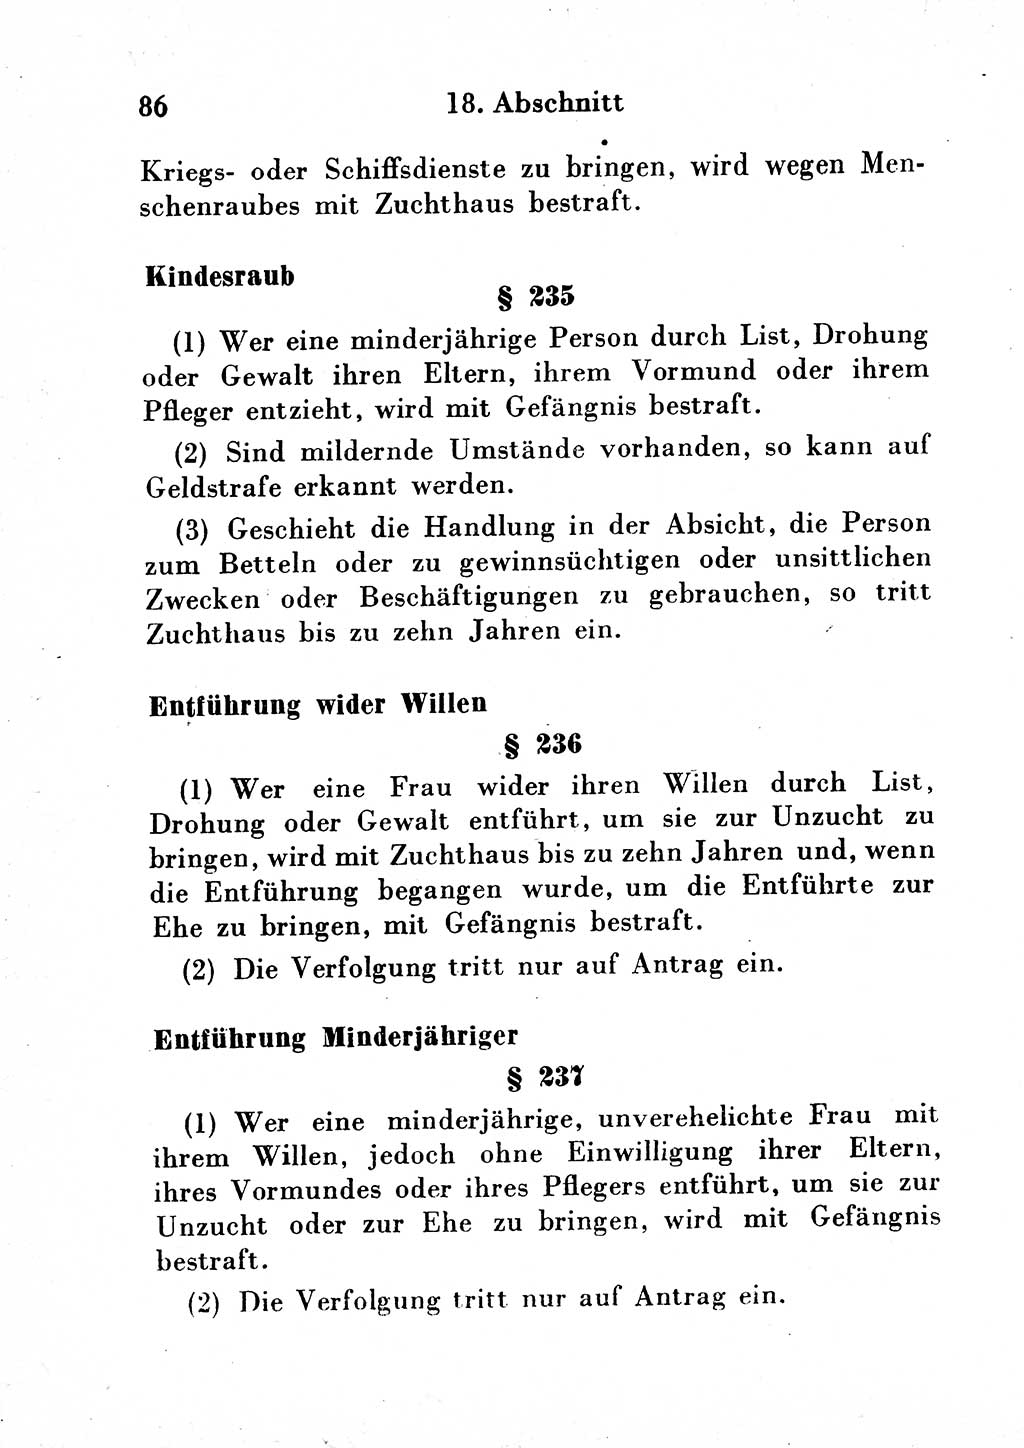 Strafgesetzbuch (StGB) und andere Strafgesetze [Deutsche Demokratische Republik (DDR)] 1954, Seite 86 (StGB Strafges. DDR 1954, S. 86)